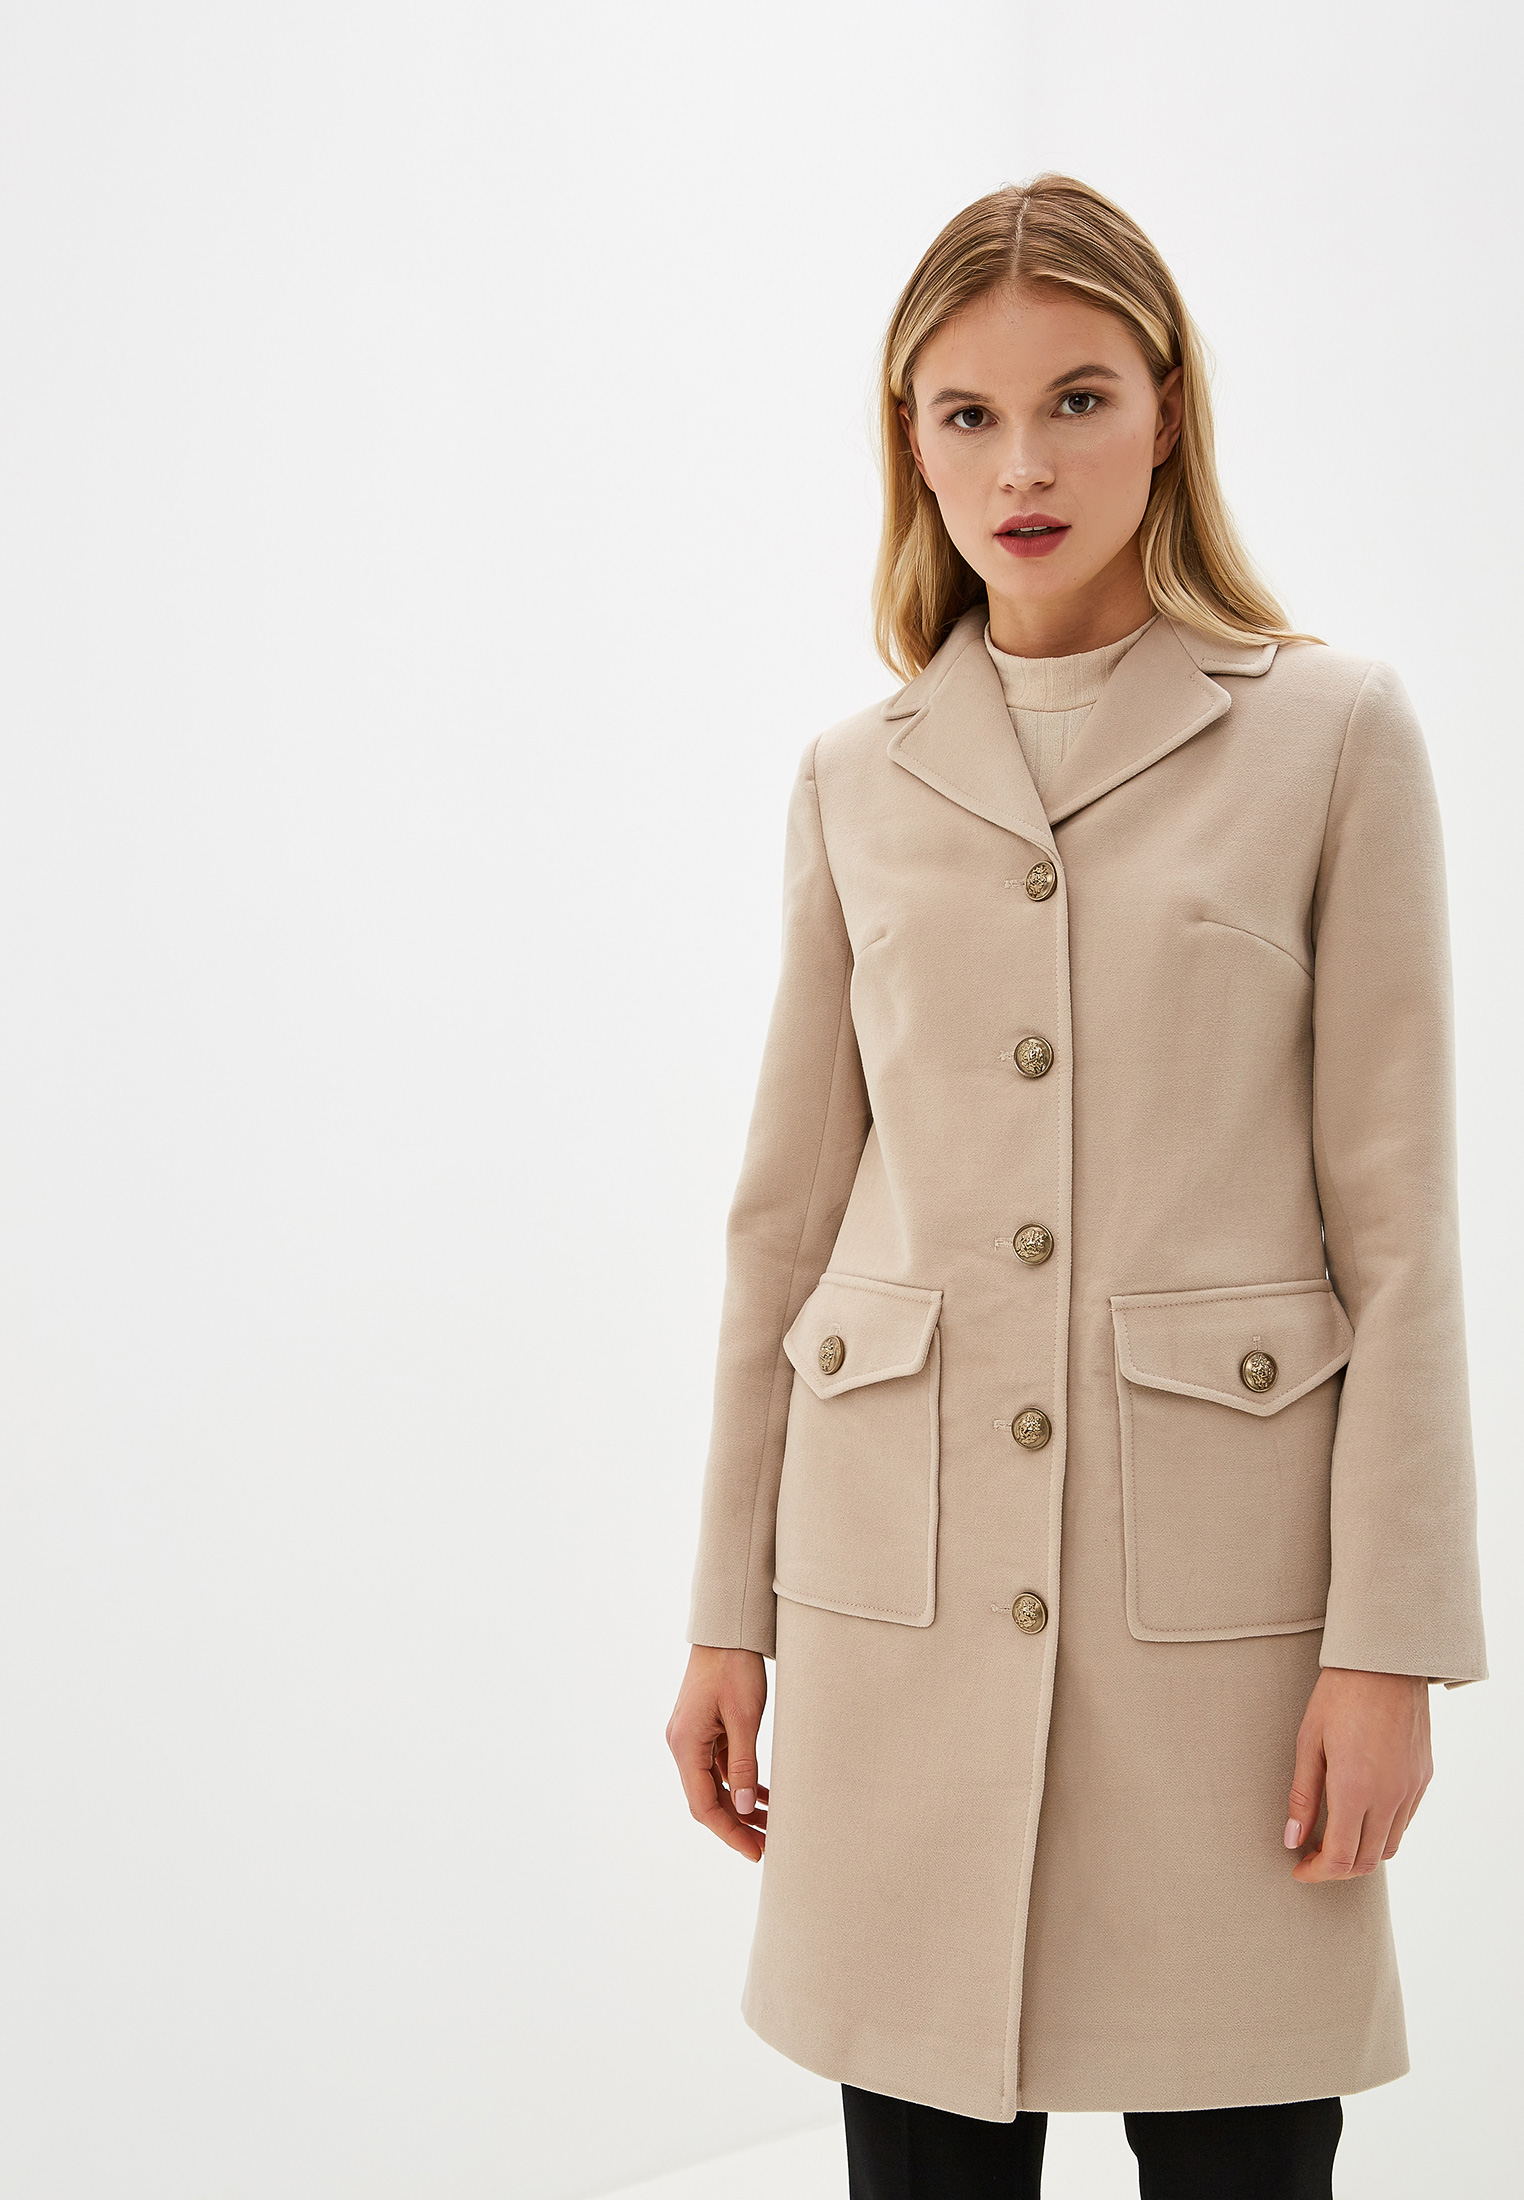 Купить женское пальто в москве демисезонное модное. Женское пальто. Фасоны пальто. Осеннее пальто. Пальто женское демисезонное.